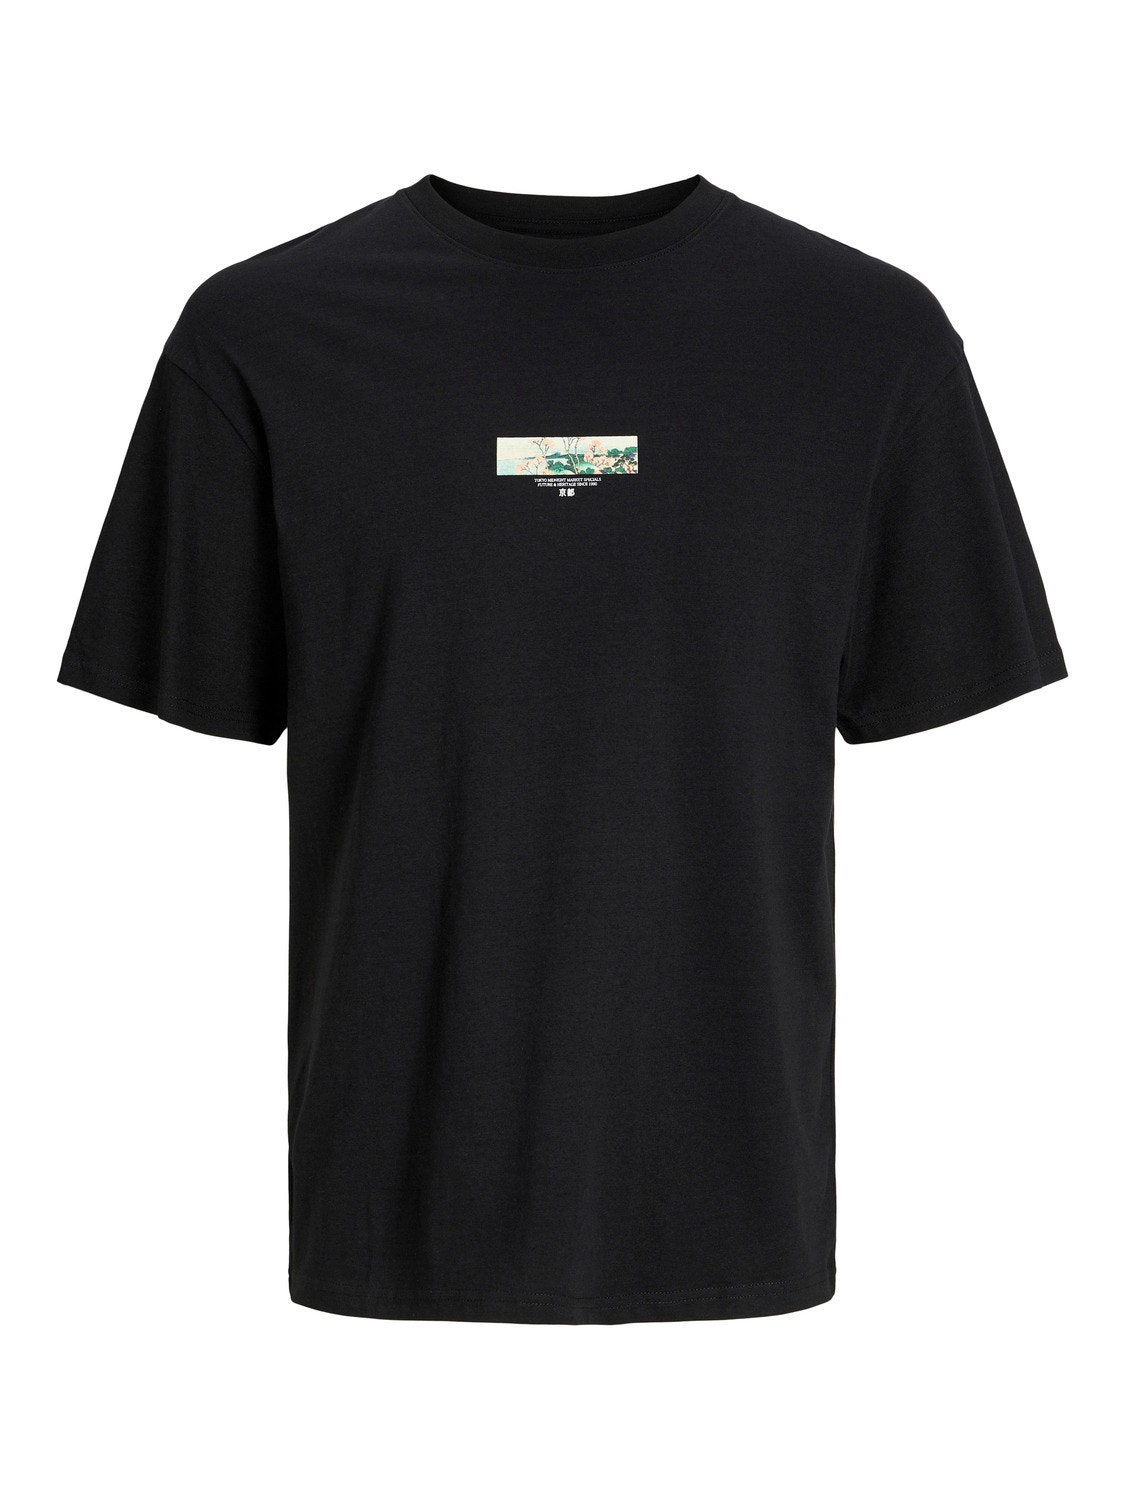 Jack & Jones Gedruckt Rundhals T-shirt -Black - 12256932